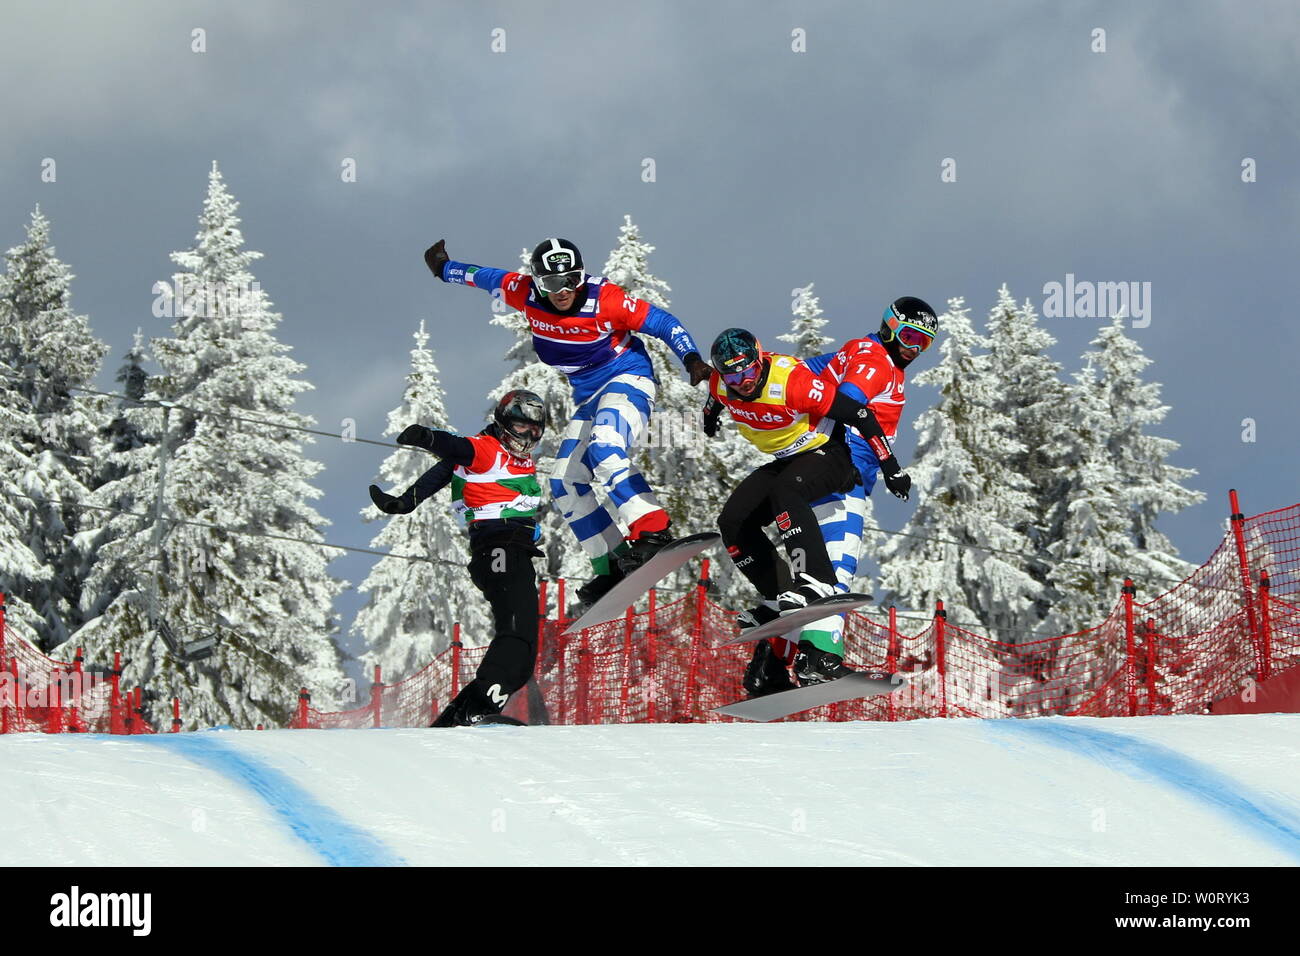 Große Sprünge vorbei an verschneiten Schwarzwaldtannen beim FIS Weltcup Snowboard SBX Feldberg - Sonntag Stock Photo